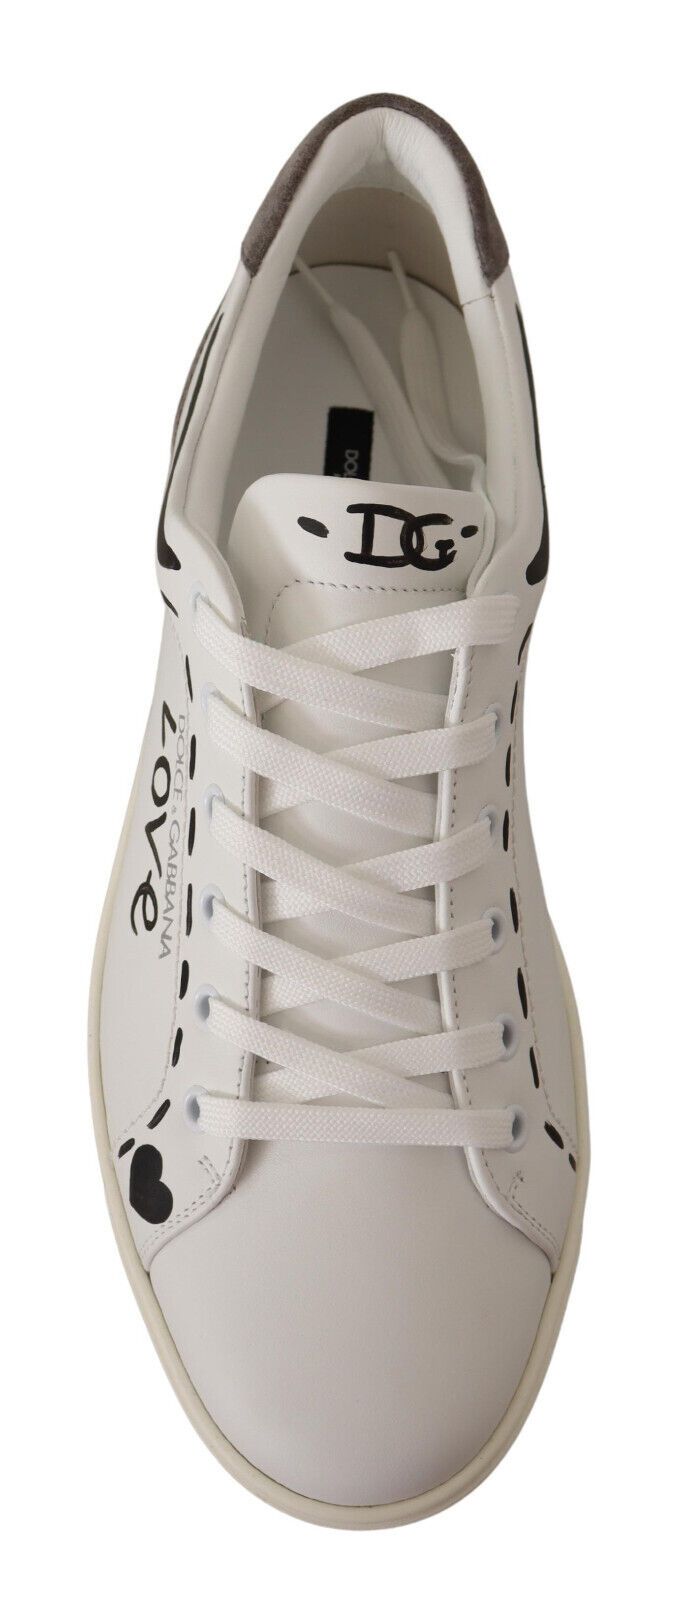 Dolce & gabbana en cuir blanc gris amour baskets décontractées chaussures